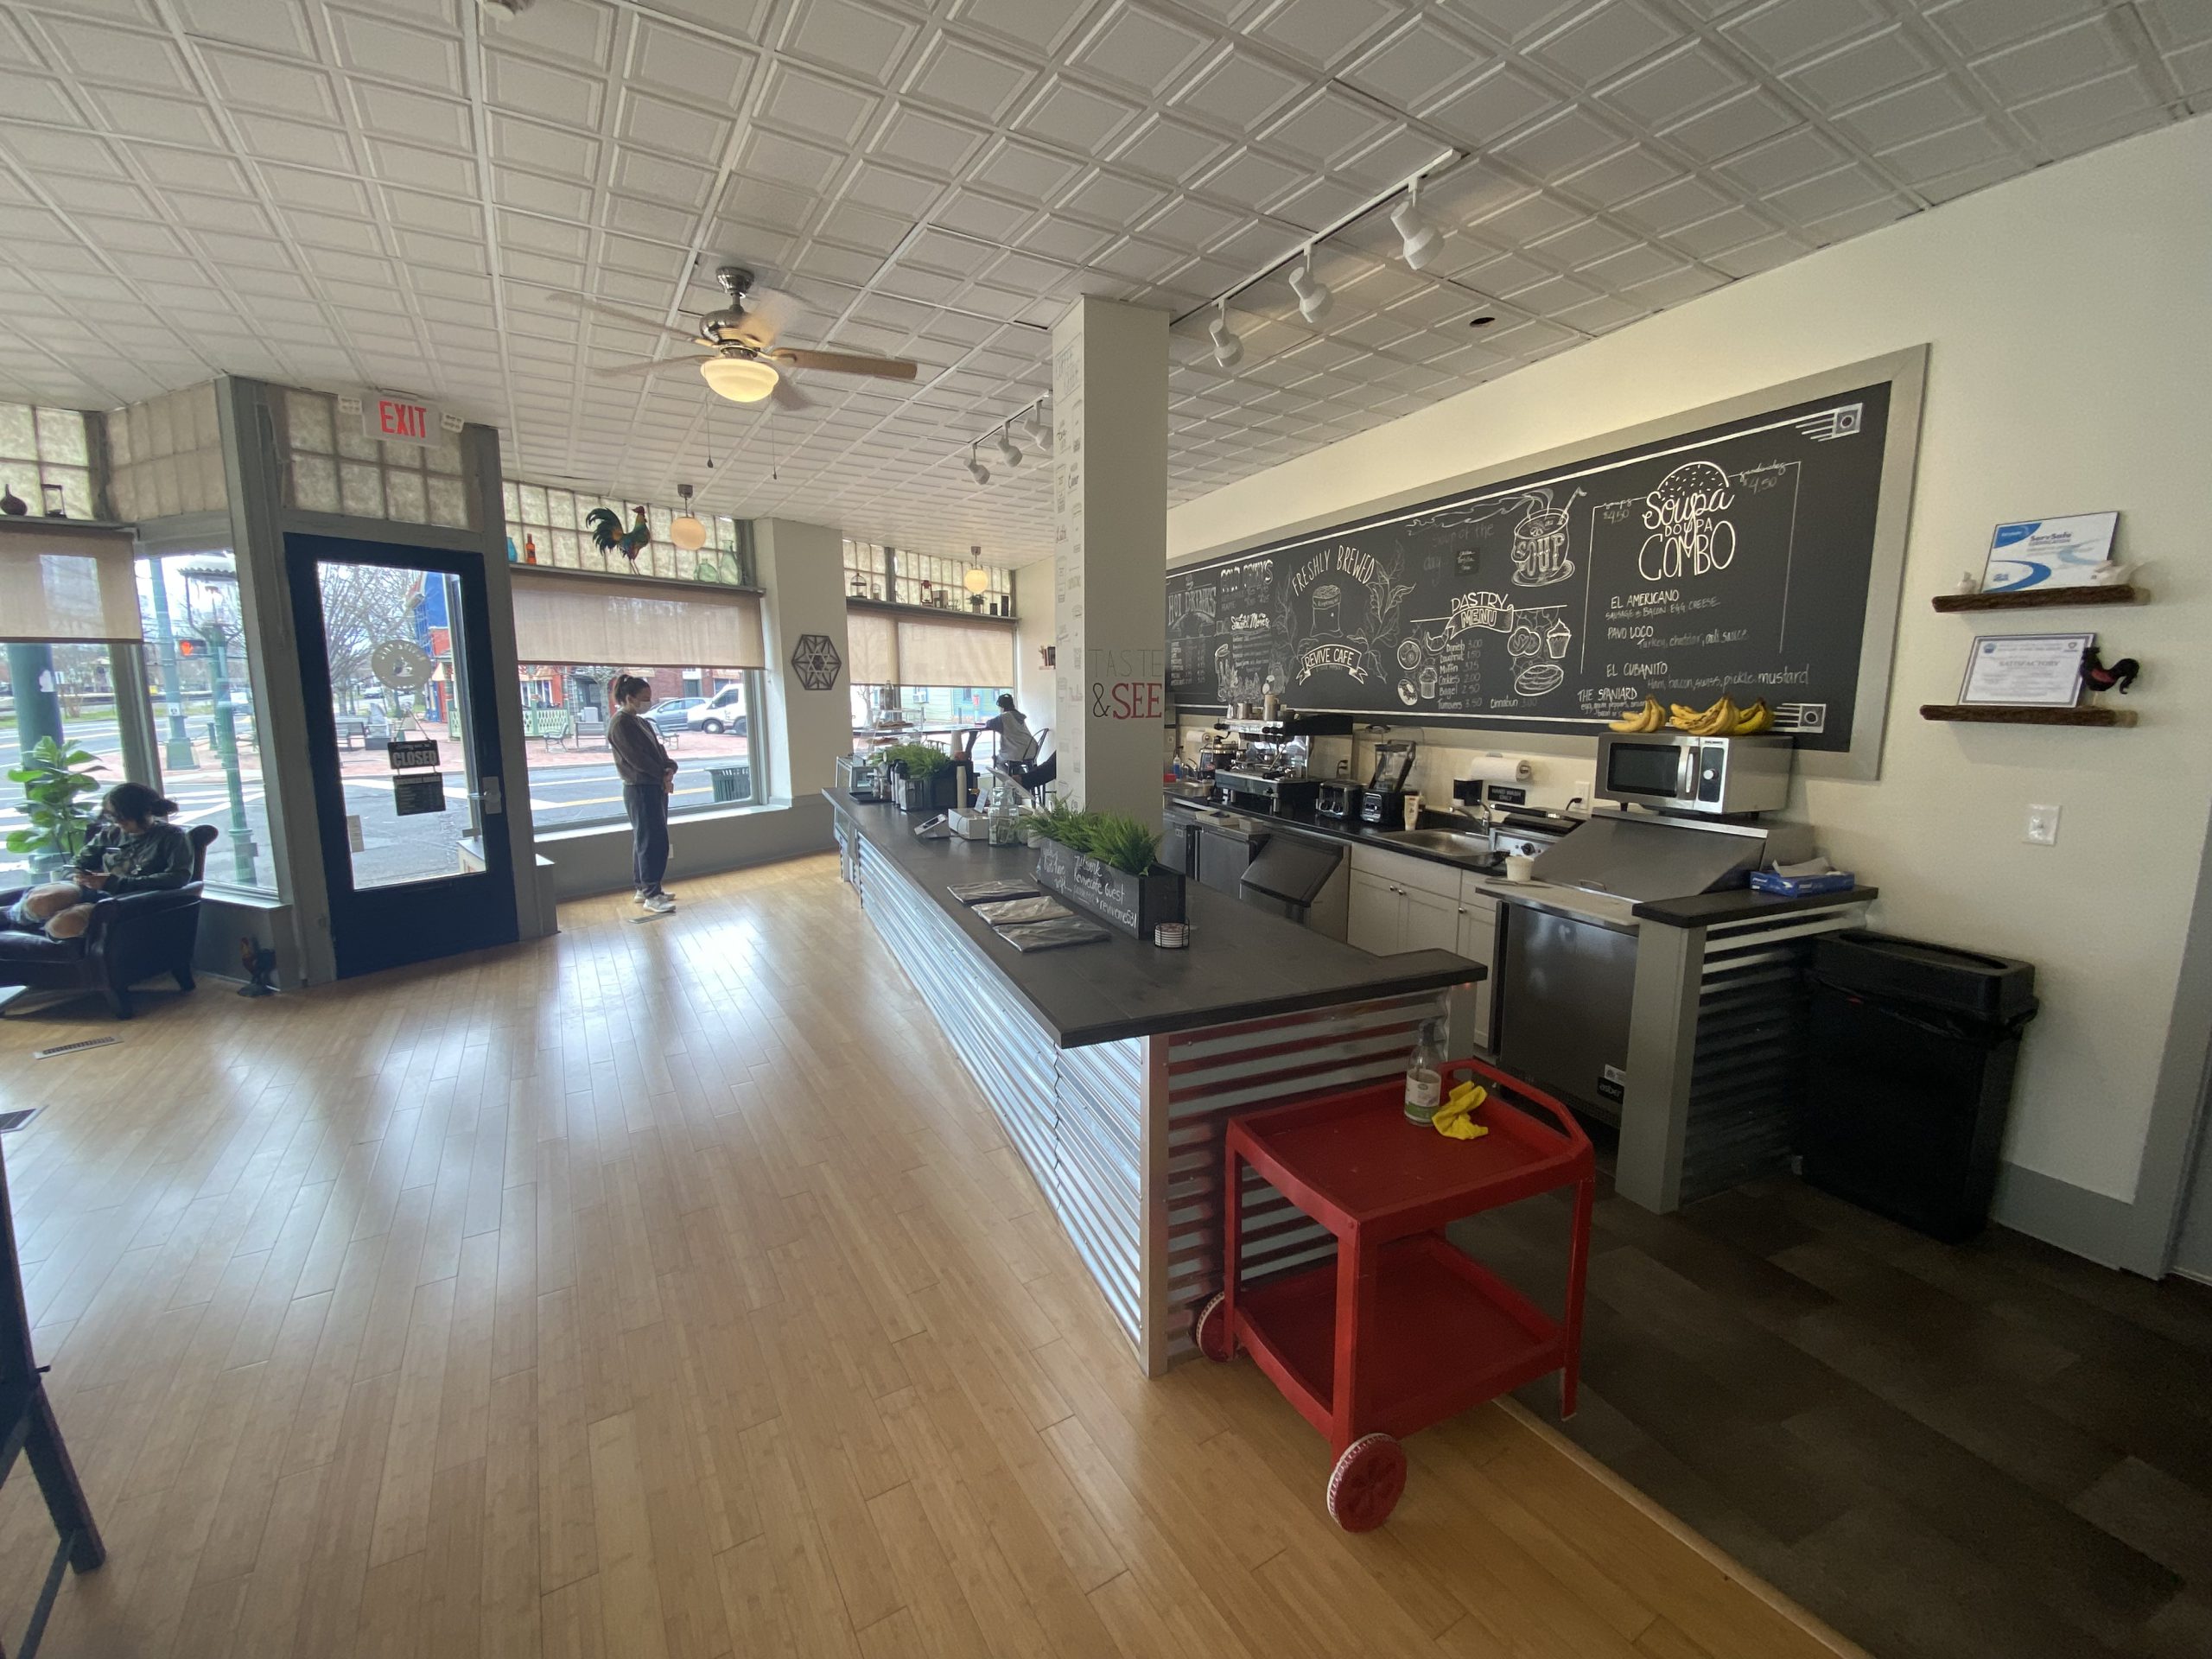 Revive Cafe in Historic Riverton